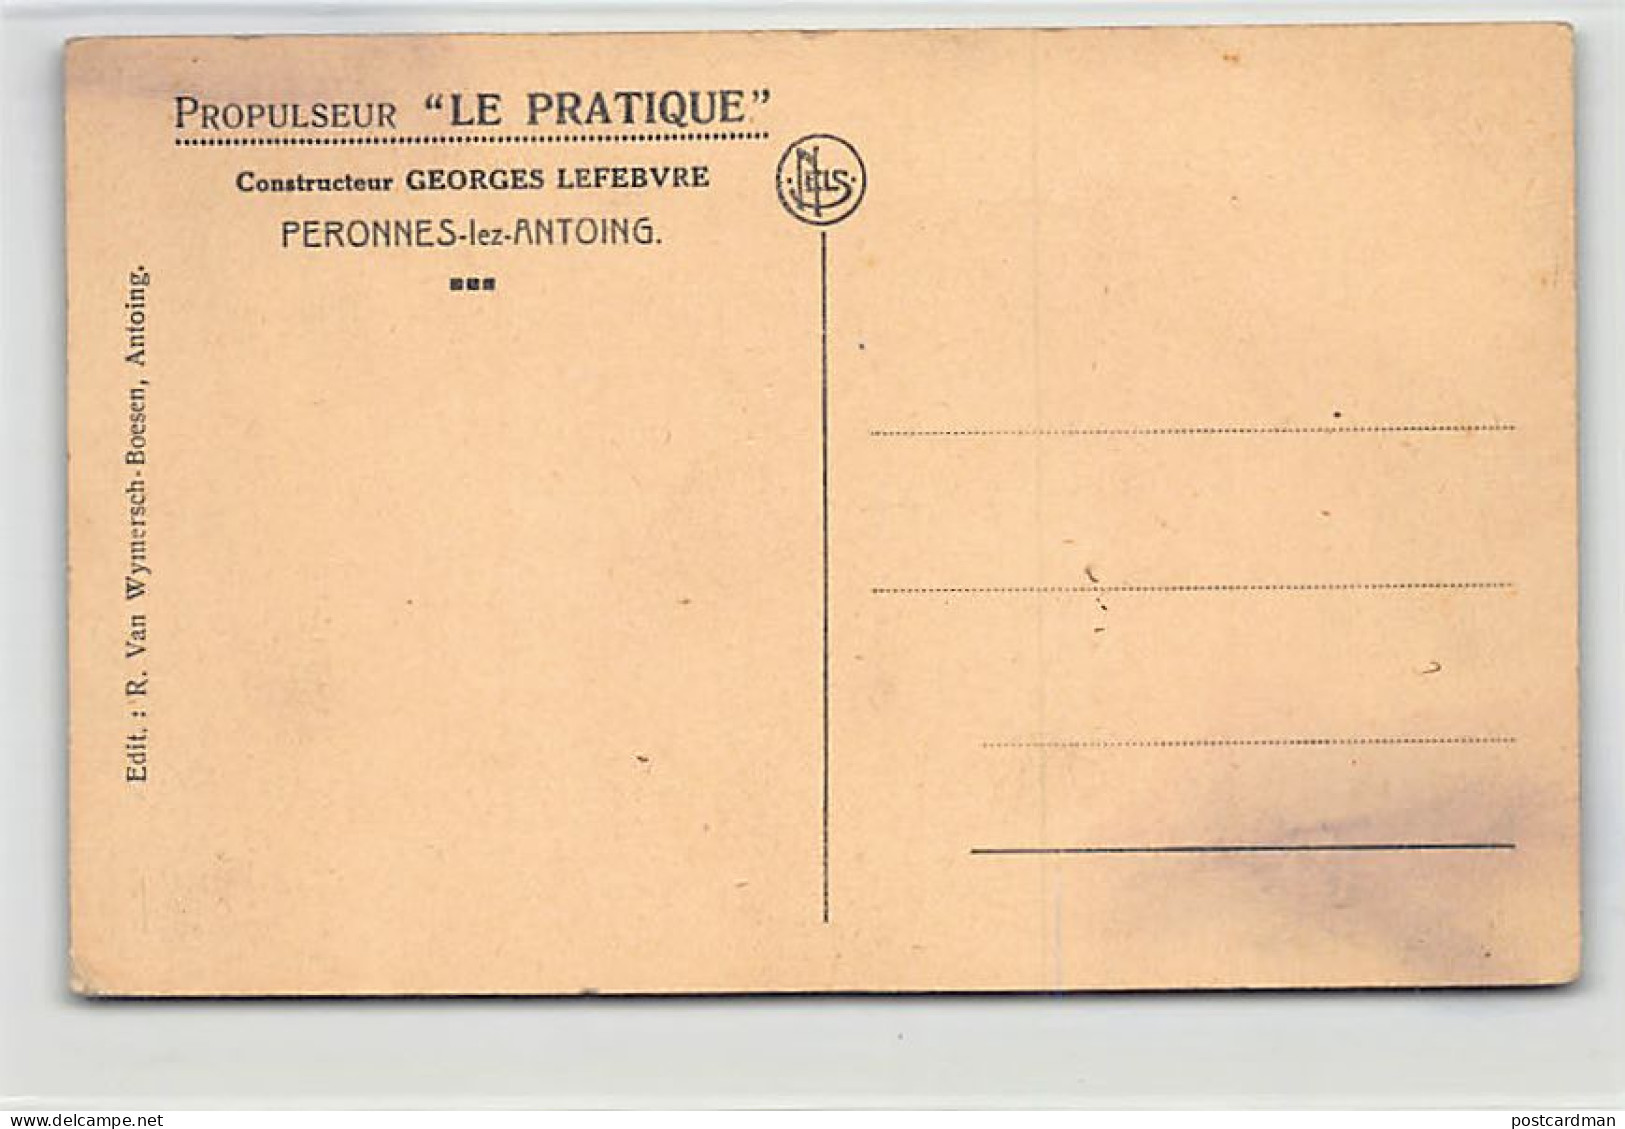 Belgique - PERONNES Lez ANTOING (Hainaut) Péniche Germaine - Propulseur Le Pratique - Constructeur Georges Lefevbre - Ed - Antoing